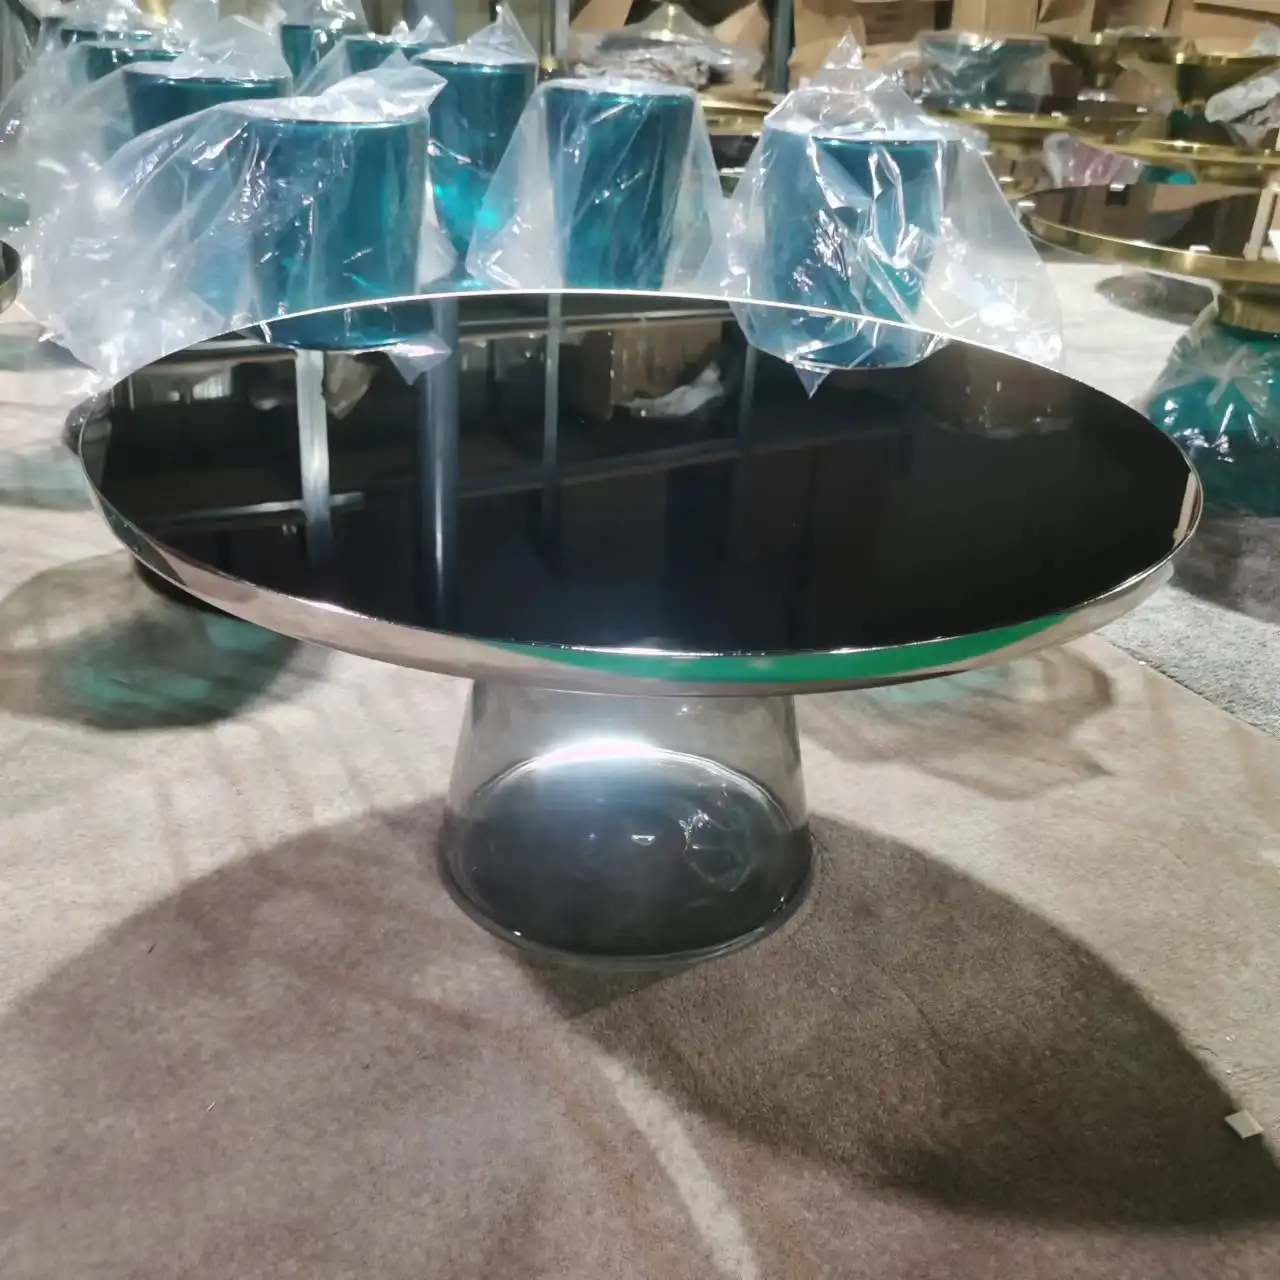 طاولة مركزية زجاجية بتصميم حديث ، تصميم حديث ، طاولة مركزية جديدة ، تصميم طاولة مركزية من الزجاج العلوي ، تصميم طاولة مركزية